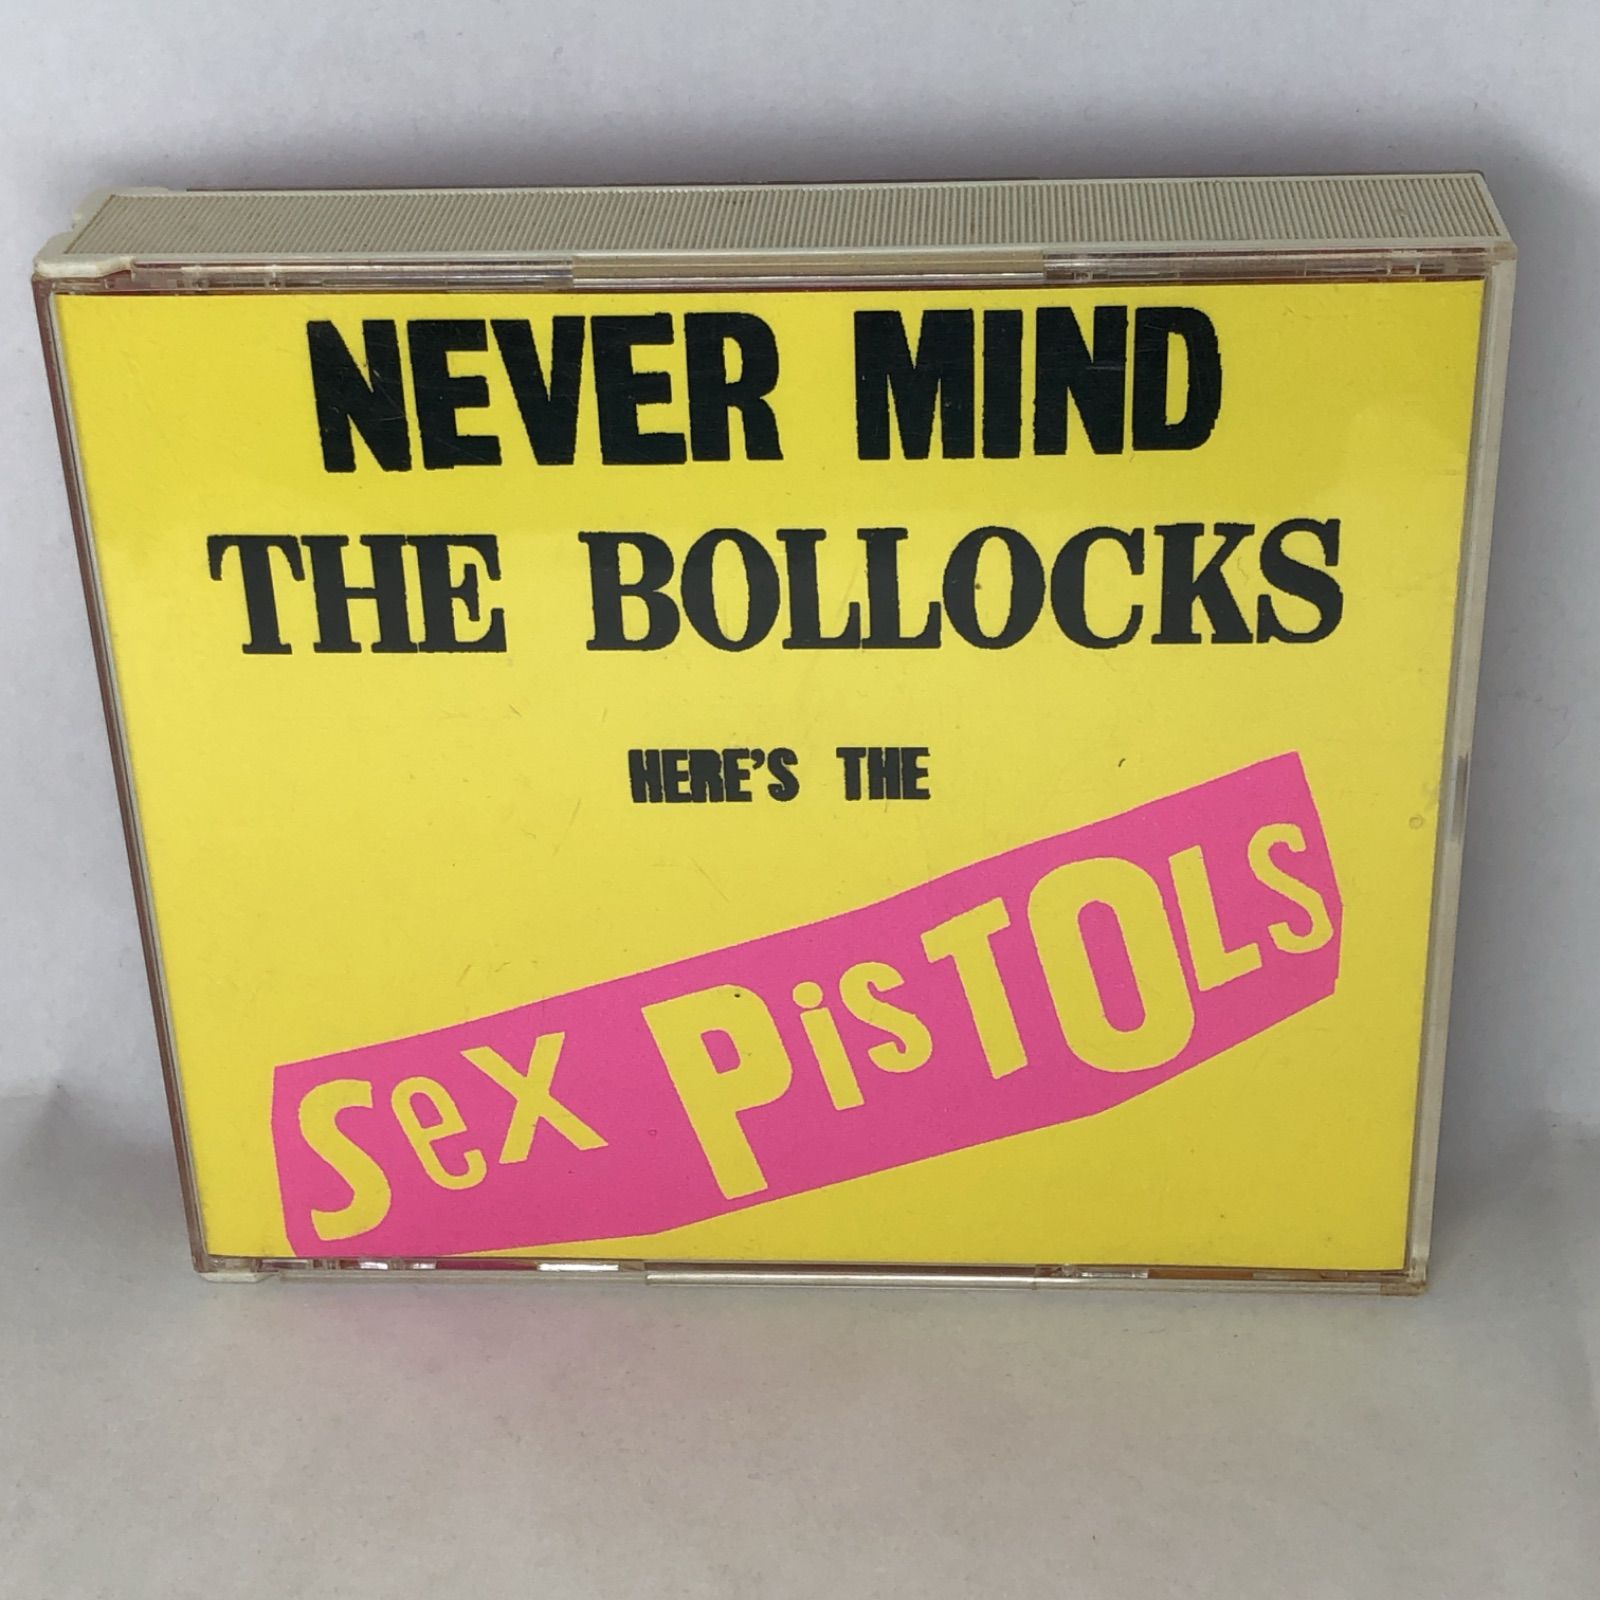 セックス・ピストルズ 『スパンク・ボックス』 2CD+8cmCDの3枚組限定盤